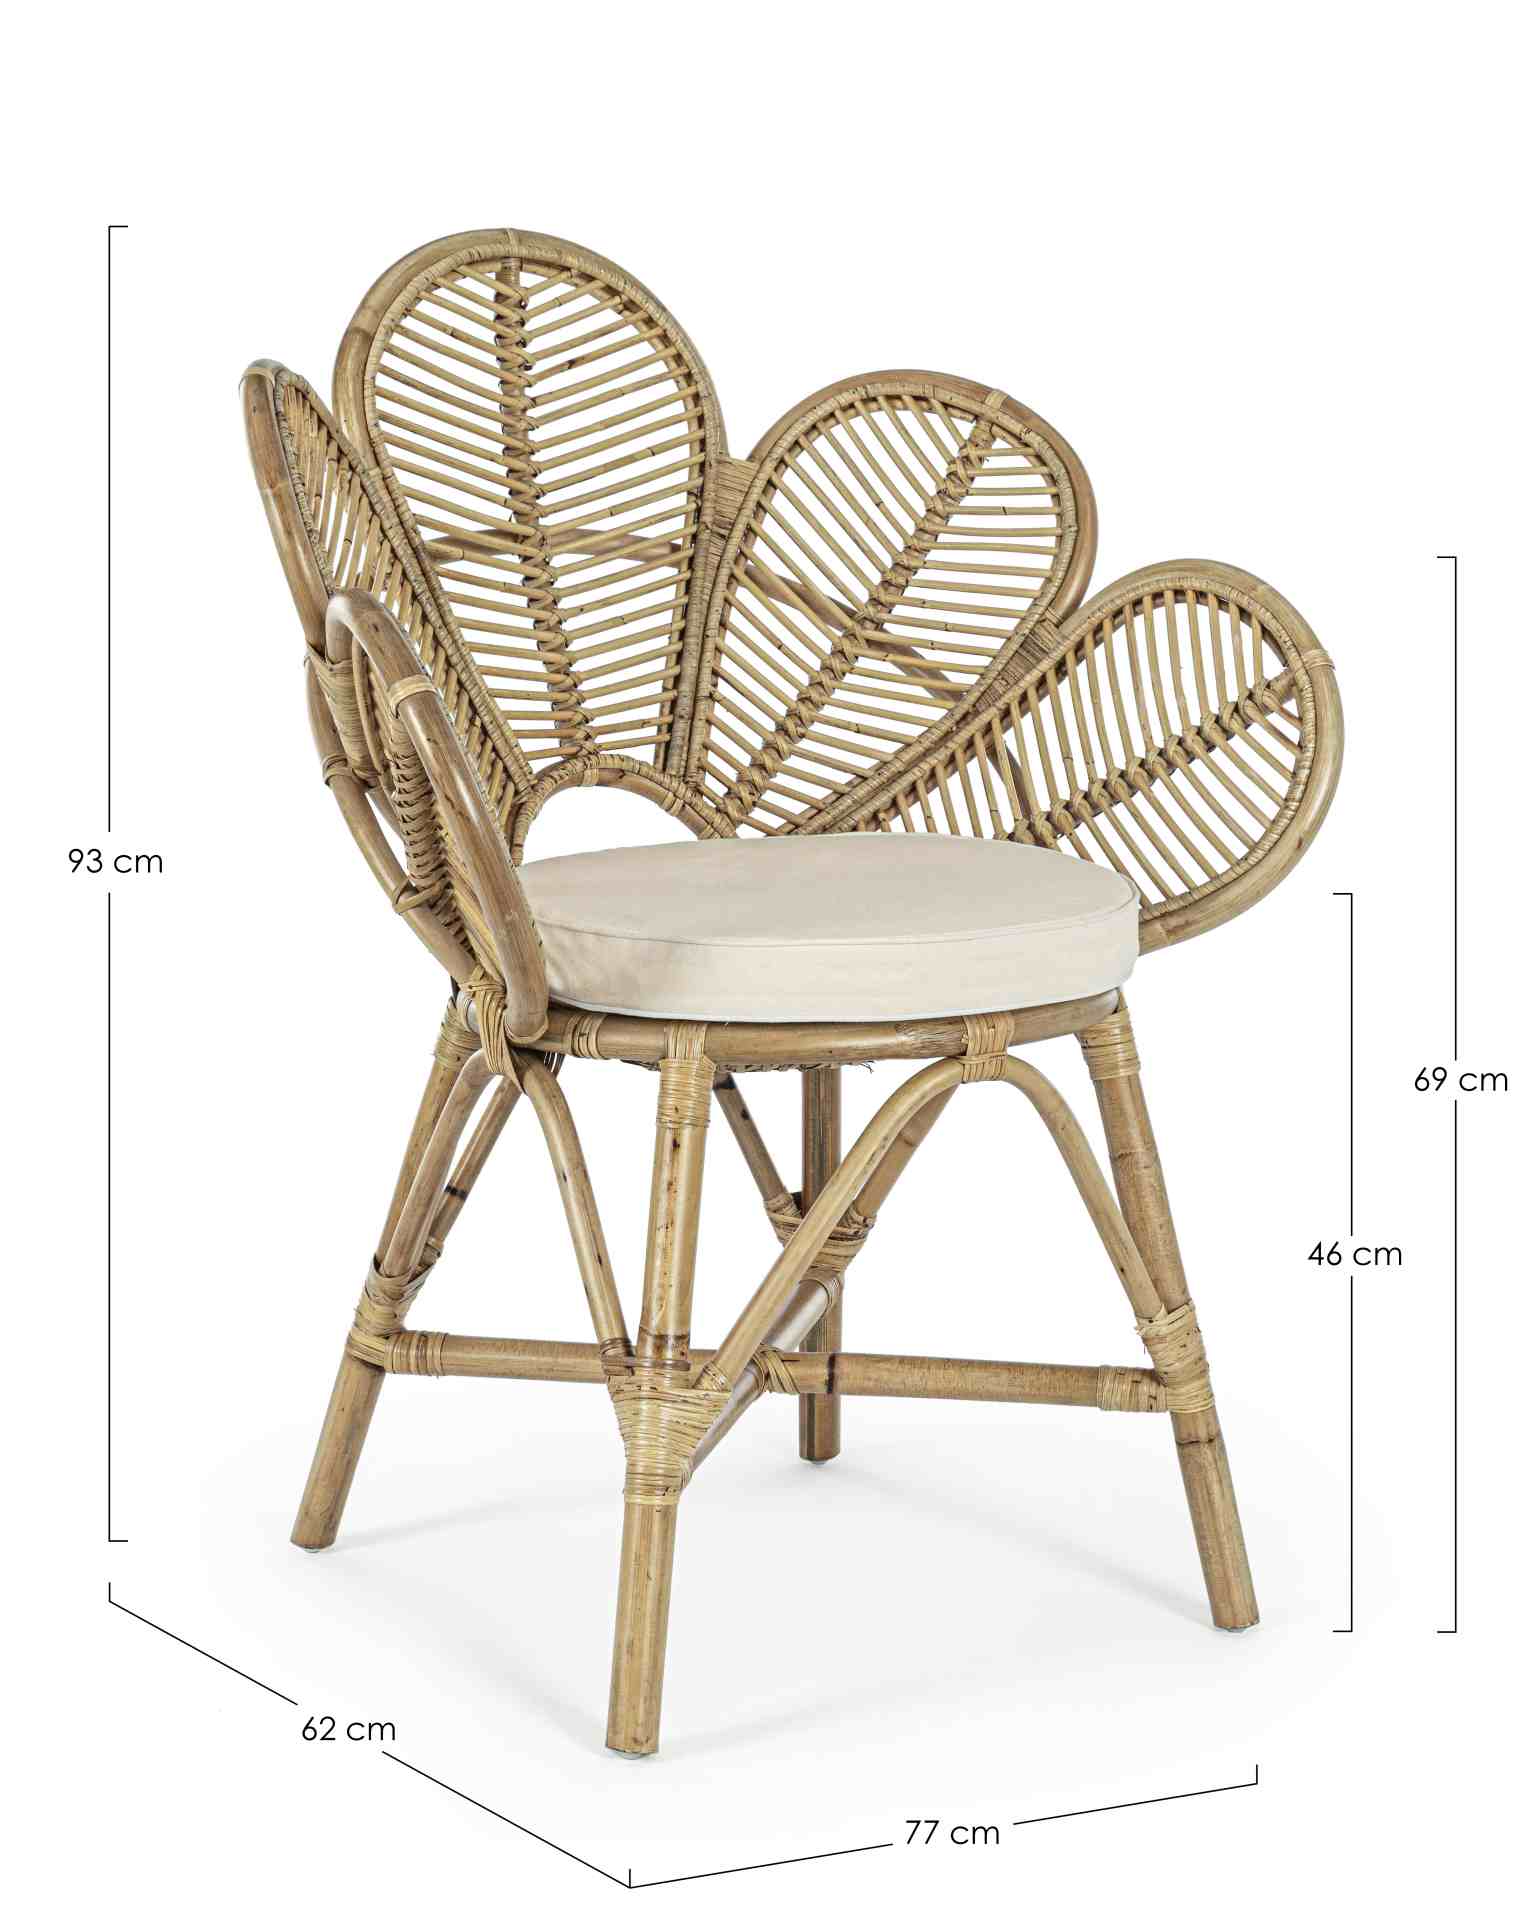 Der Stuhl Flores überzeugt mit seiner besonderen Form. Gefertigt wurde der Stuhl aus Rattan, welcher einen natürlichen Farbton besitzt. Der Stuhl wird inklusive Sitzkissen aus Baumwolle geliefert. Die Sitzhöhe des Stuhls beträgt 46 cm.